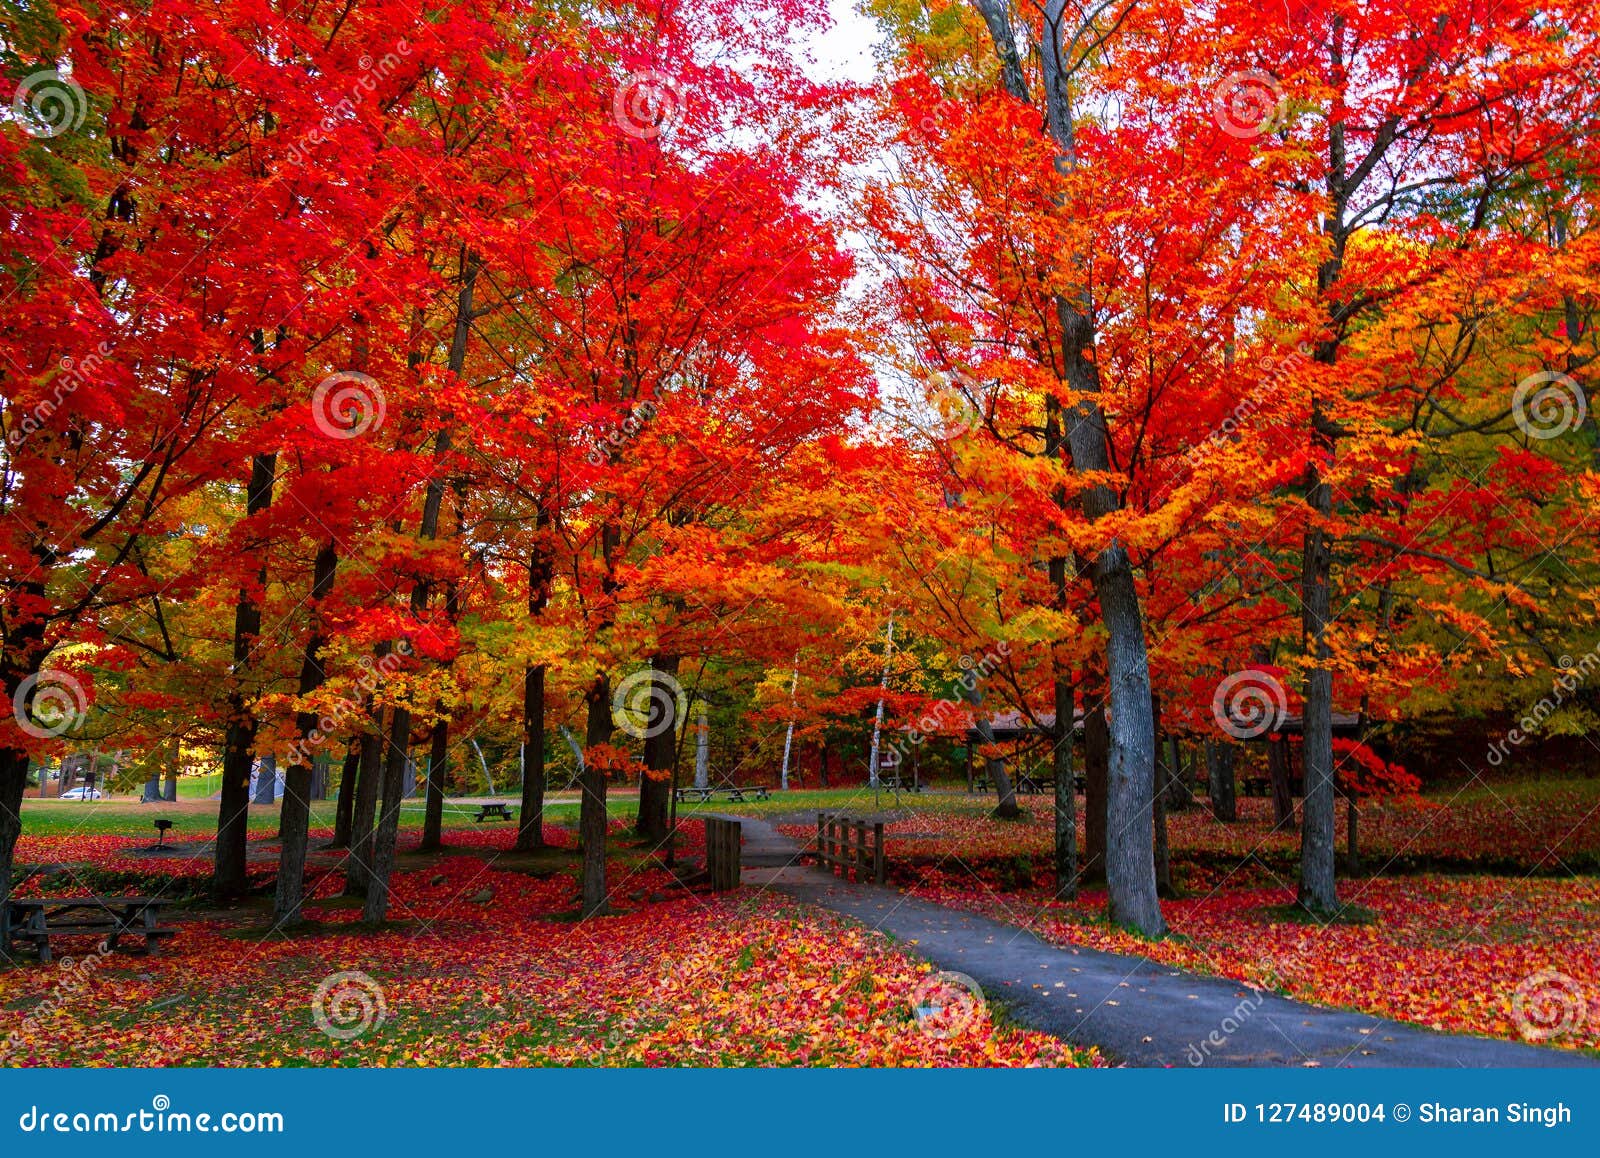 beautiful fall foliage autumn colors in the northeast usa